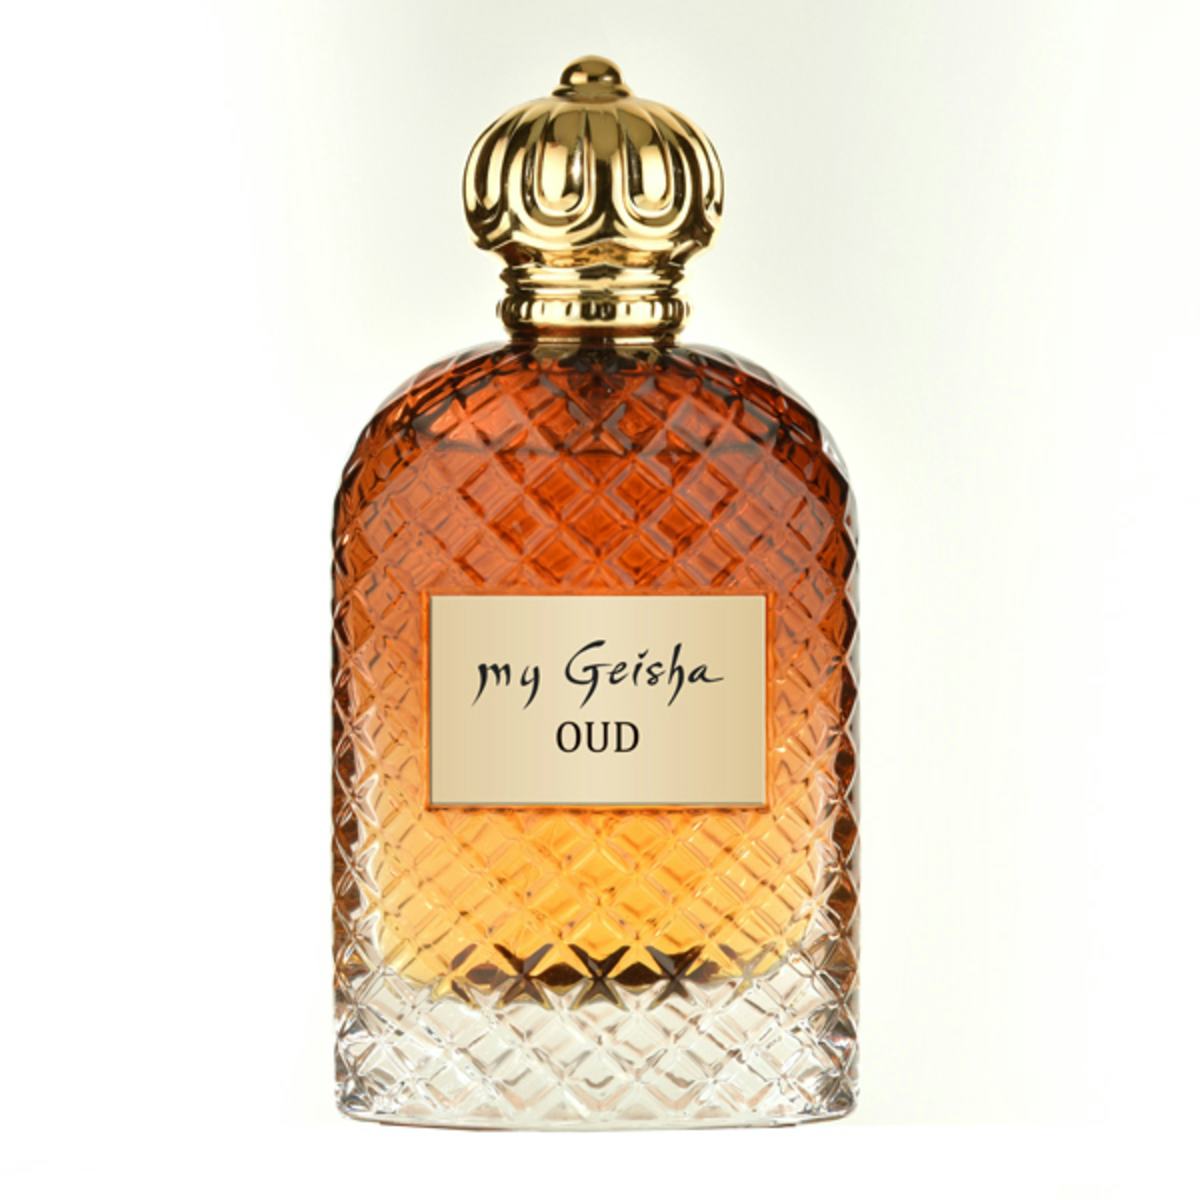 Extrait de parfum OUD 100 ml, produit artisanal en vente directe en Suisse